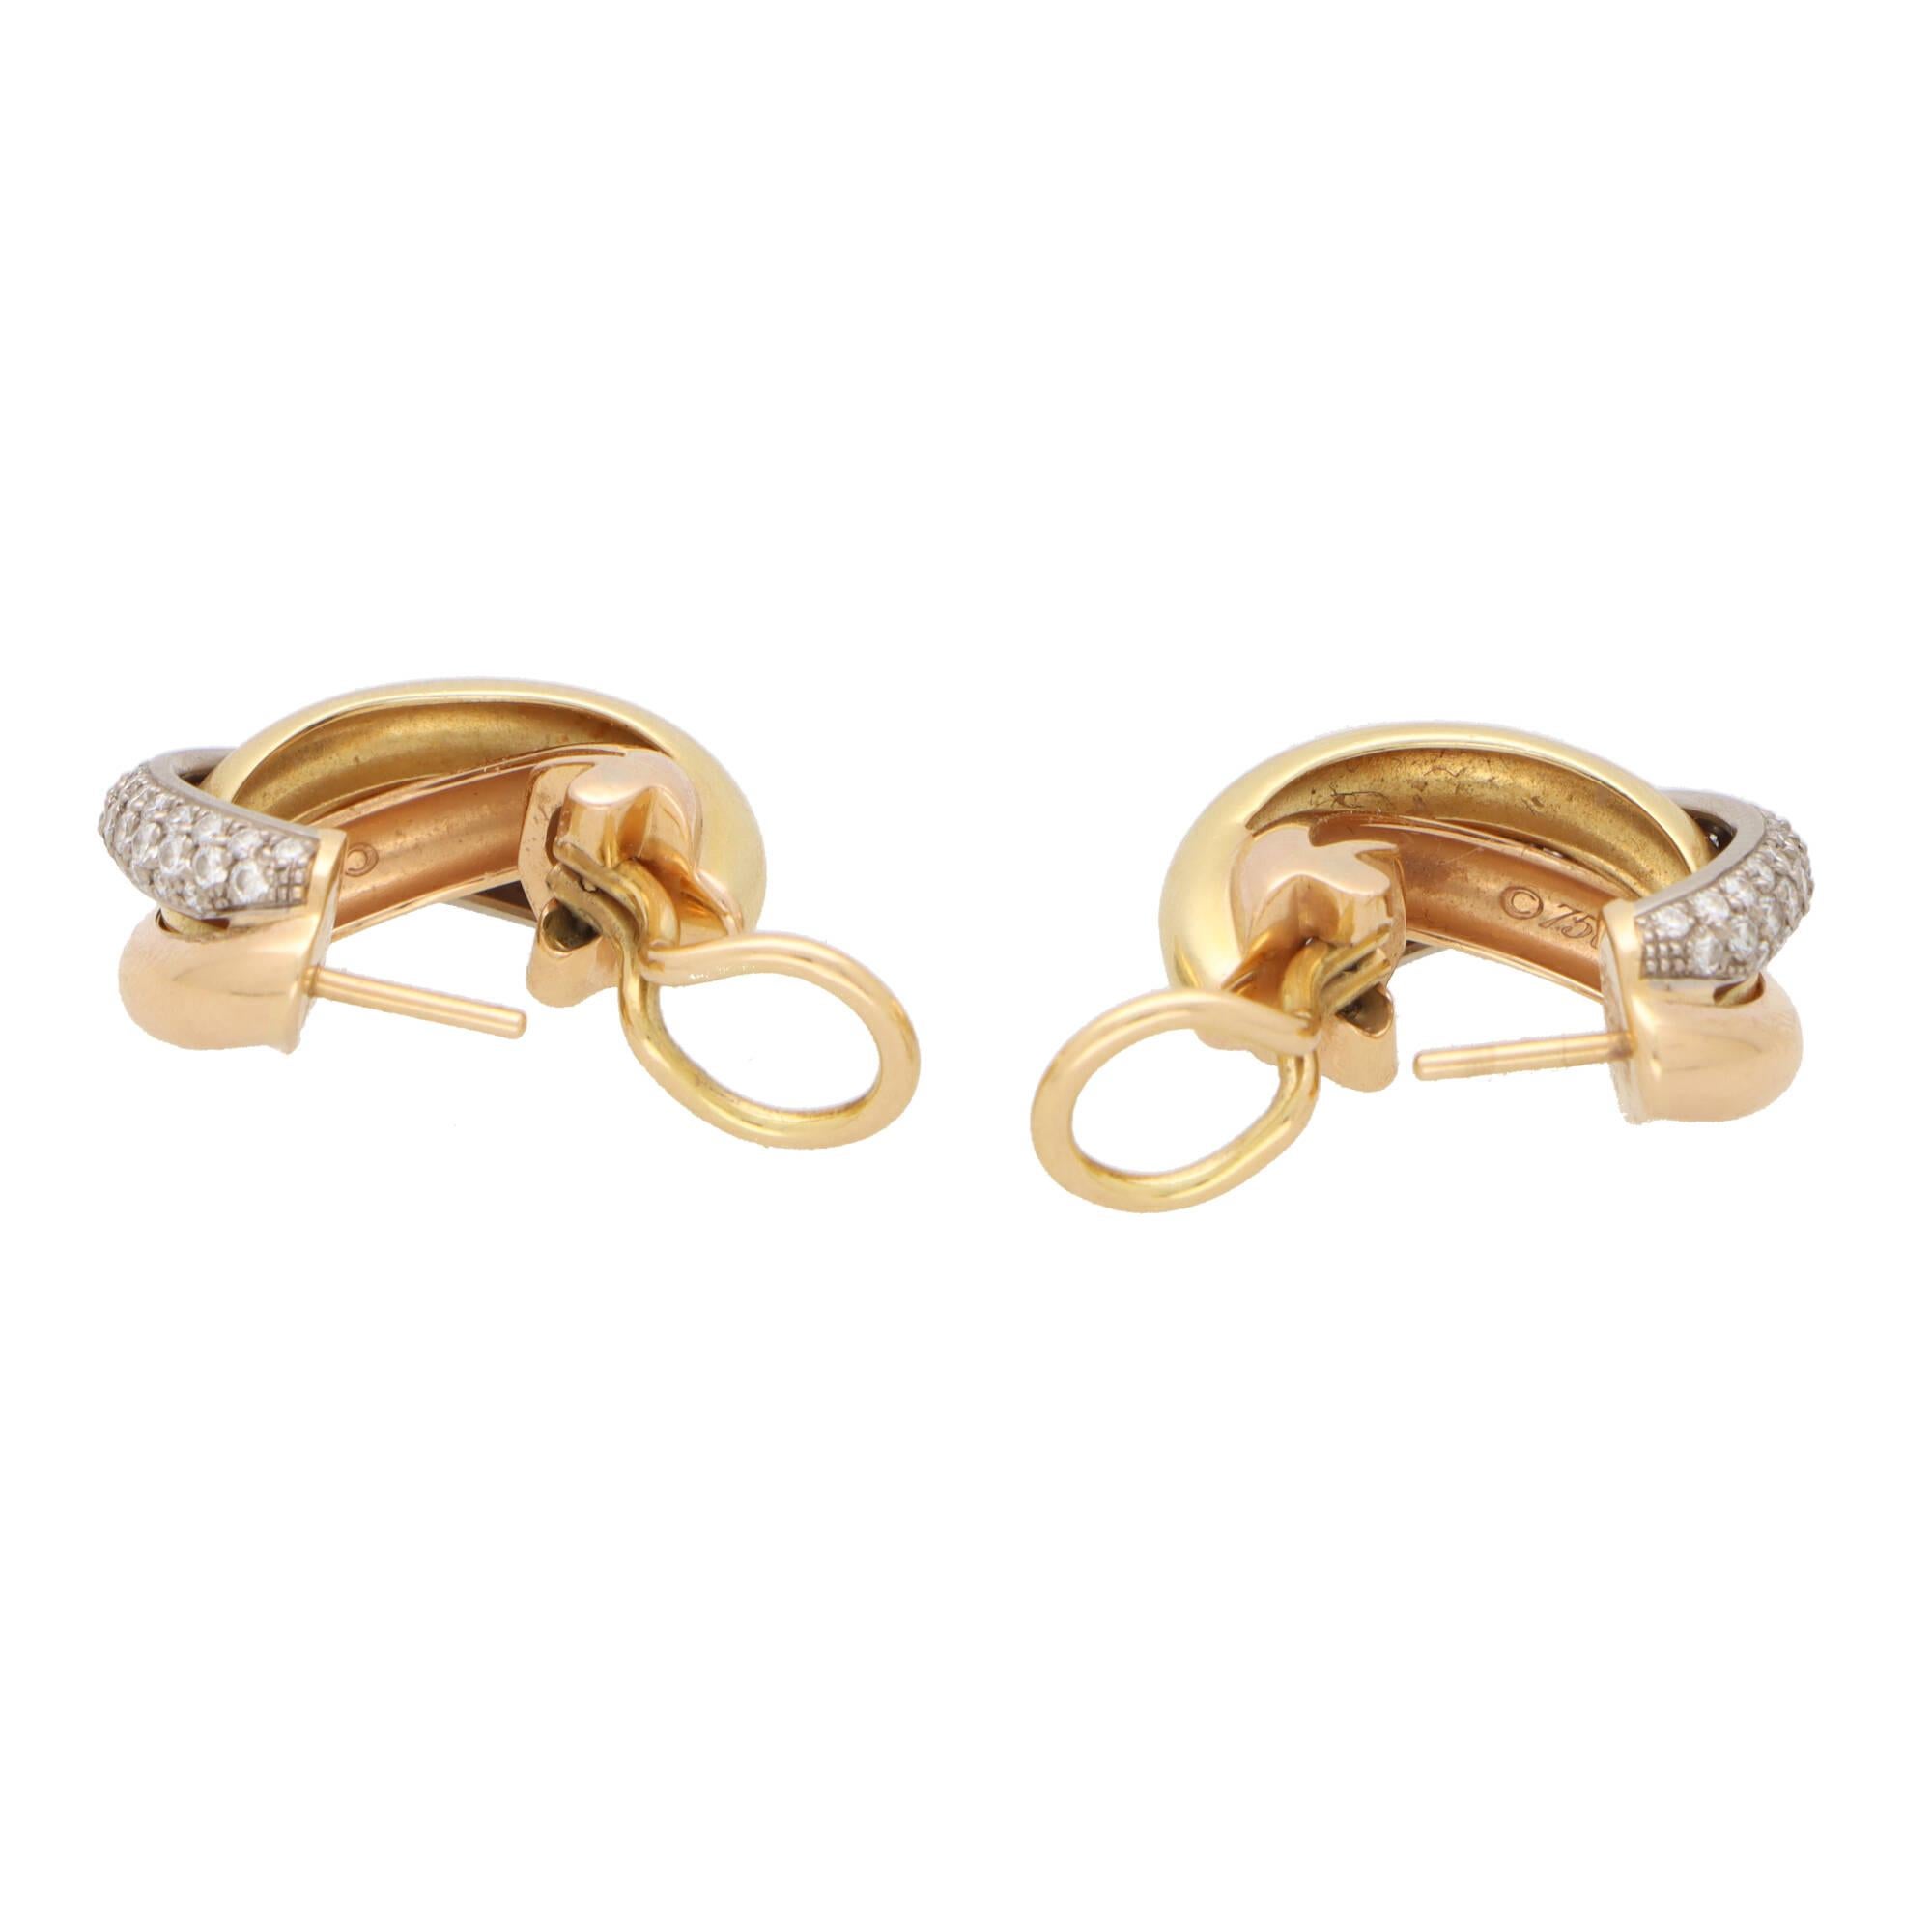 Une paire classique de boucles d'oreilles trinitaires en diamants de Cartier, montées en or jaune, rose et blanc 18 carats.

Chaque anneau est serti du design trinitaire emblématique et se compose de trois bandes de 3,5 millimètres qui sont soudées